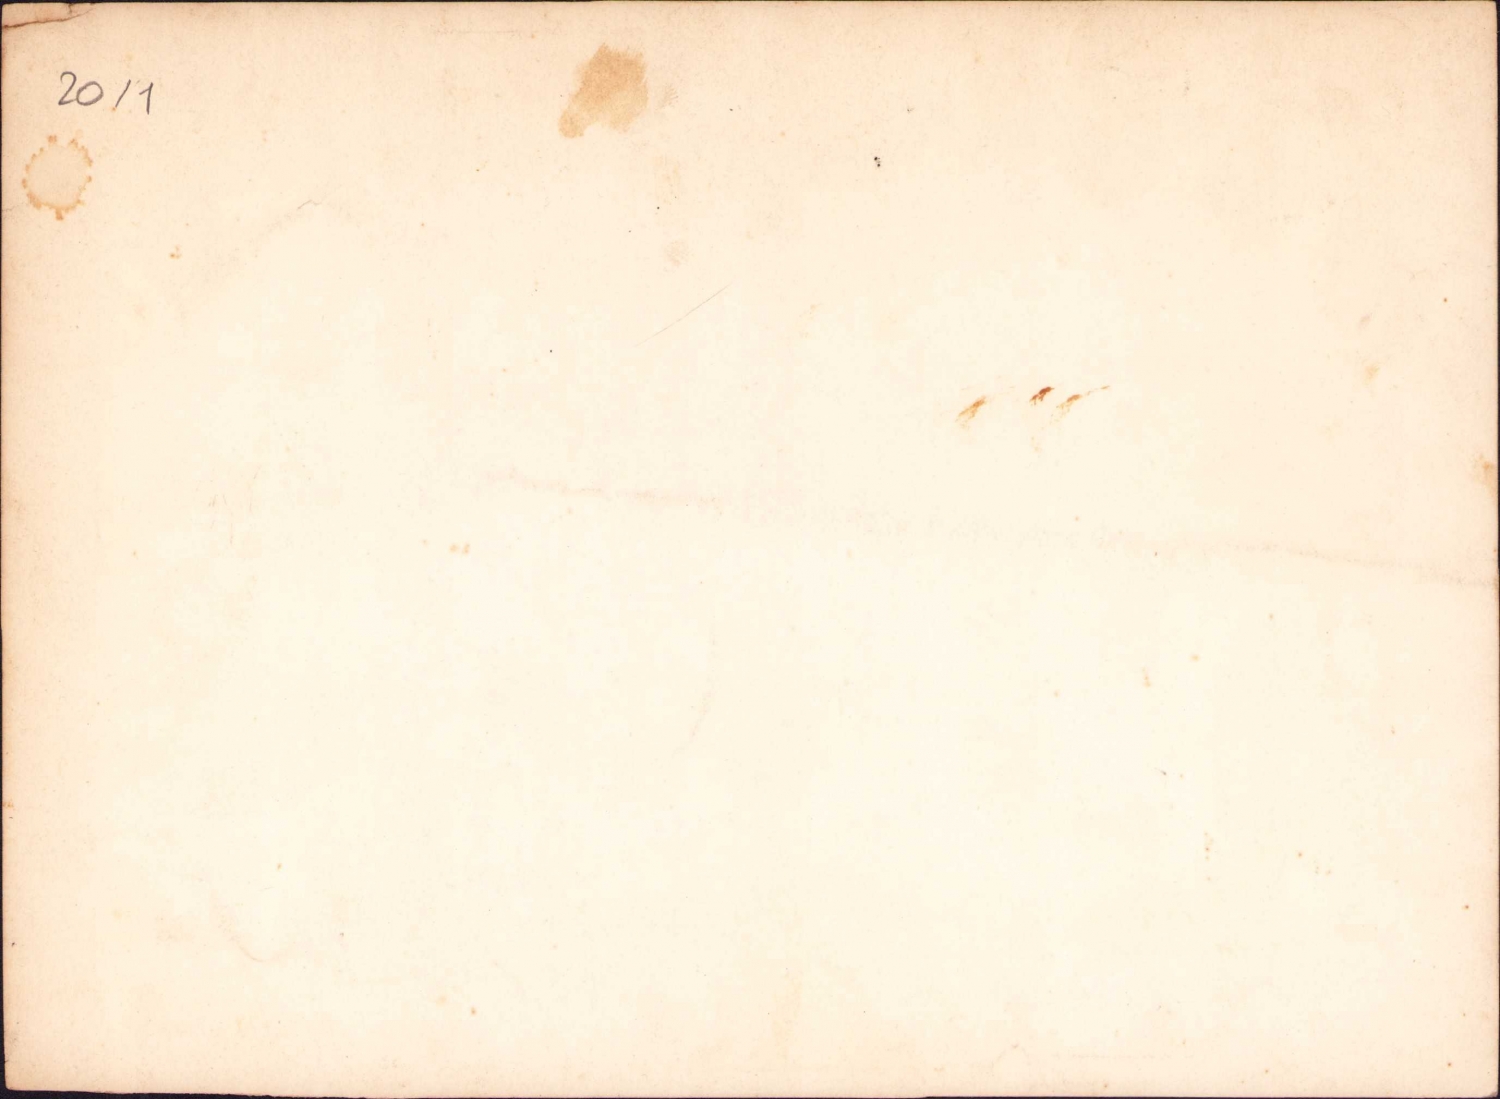 Konya Mevlevi Asitanesi iç görünüm, Hz. Mevlana'nın sandukası, 23x17 cm.